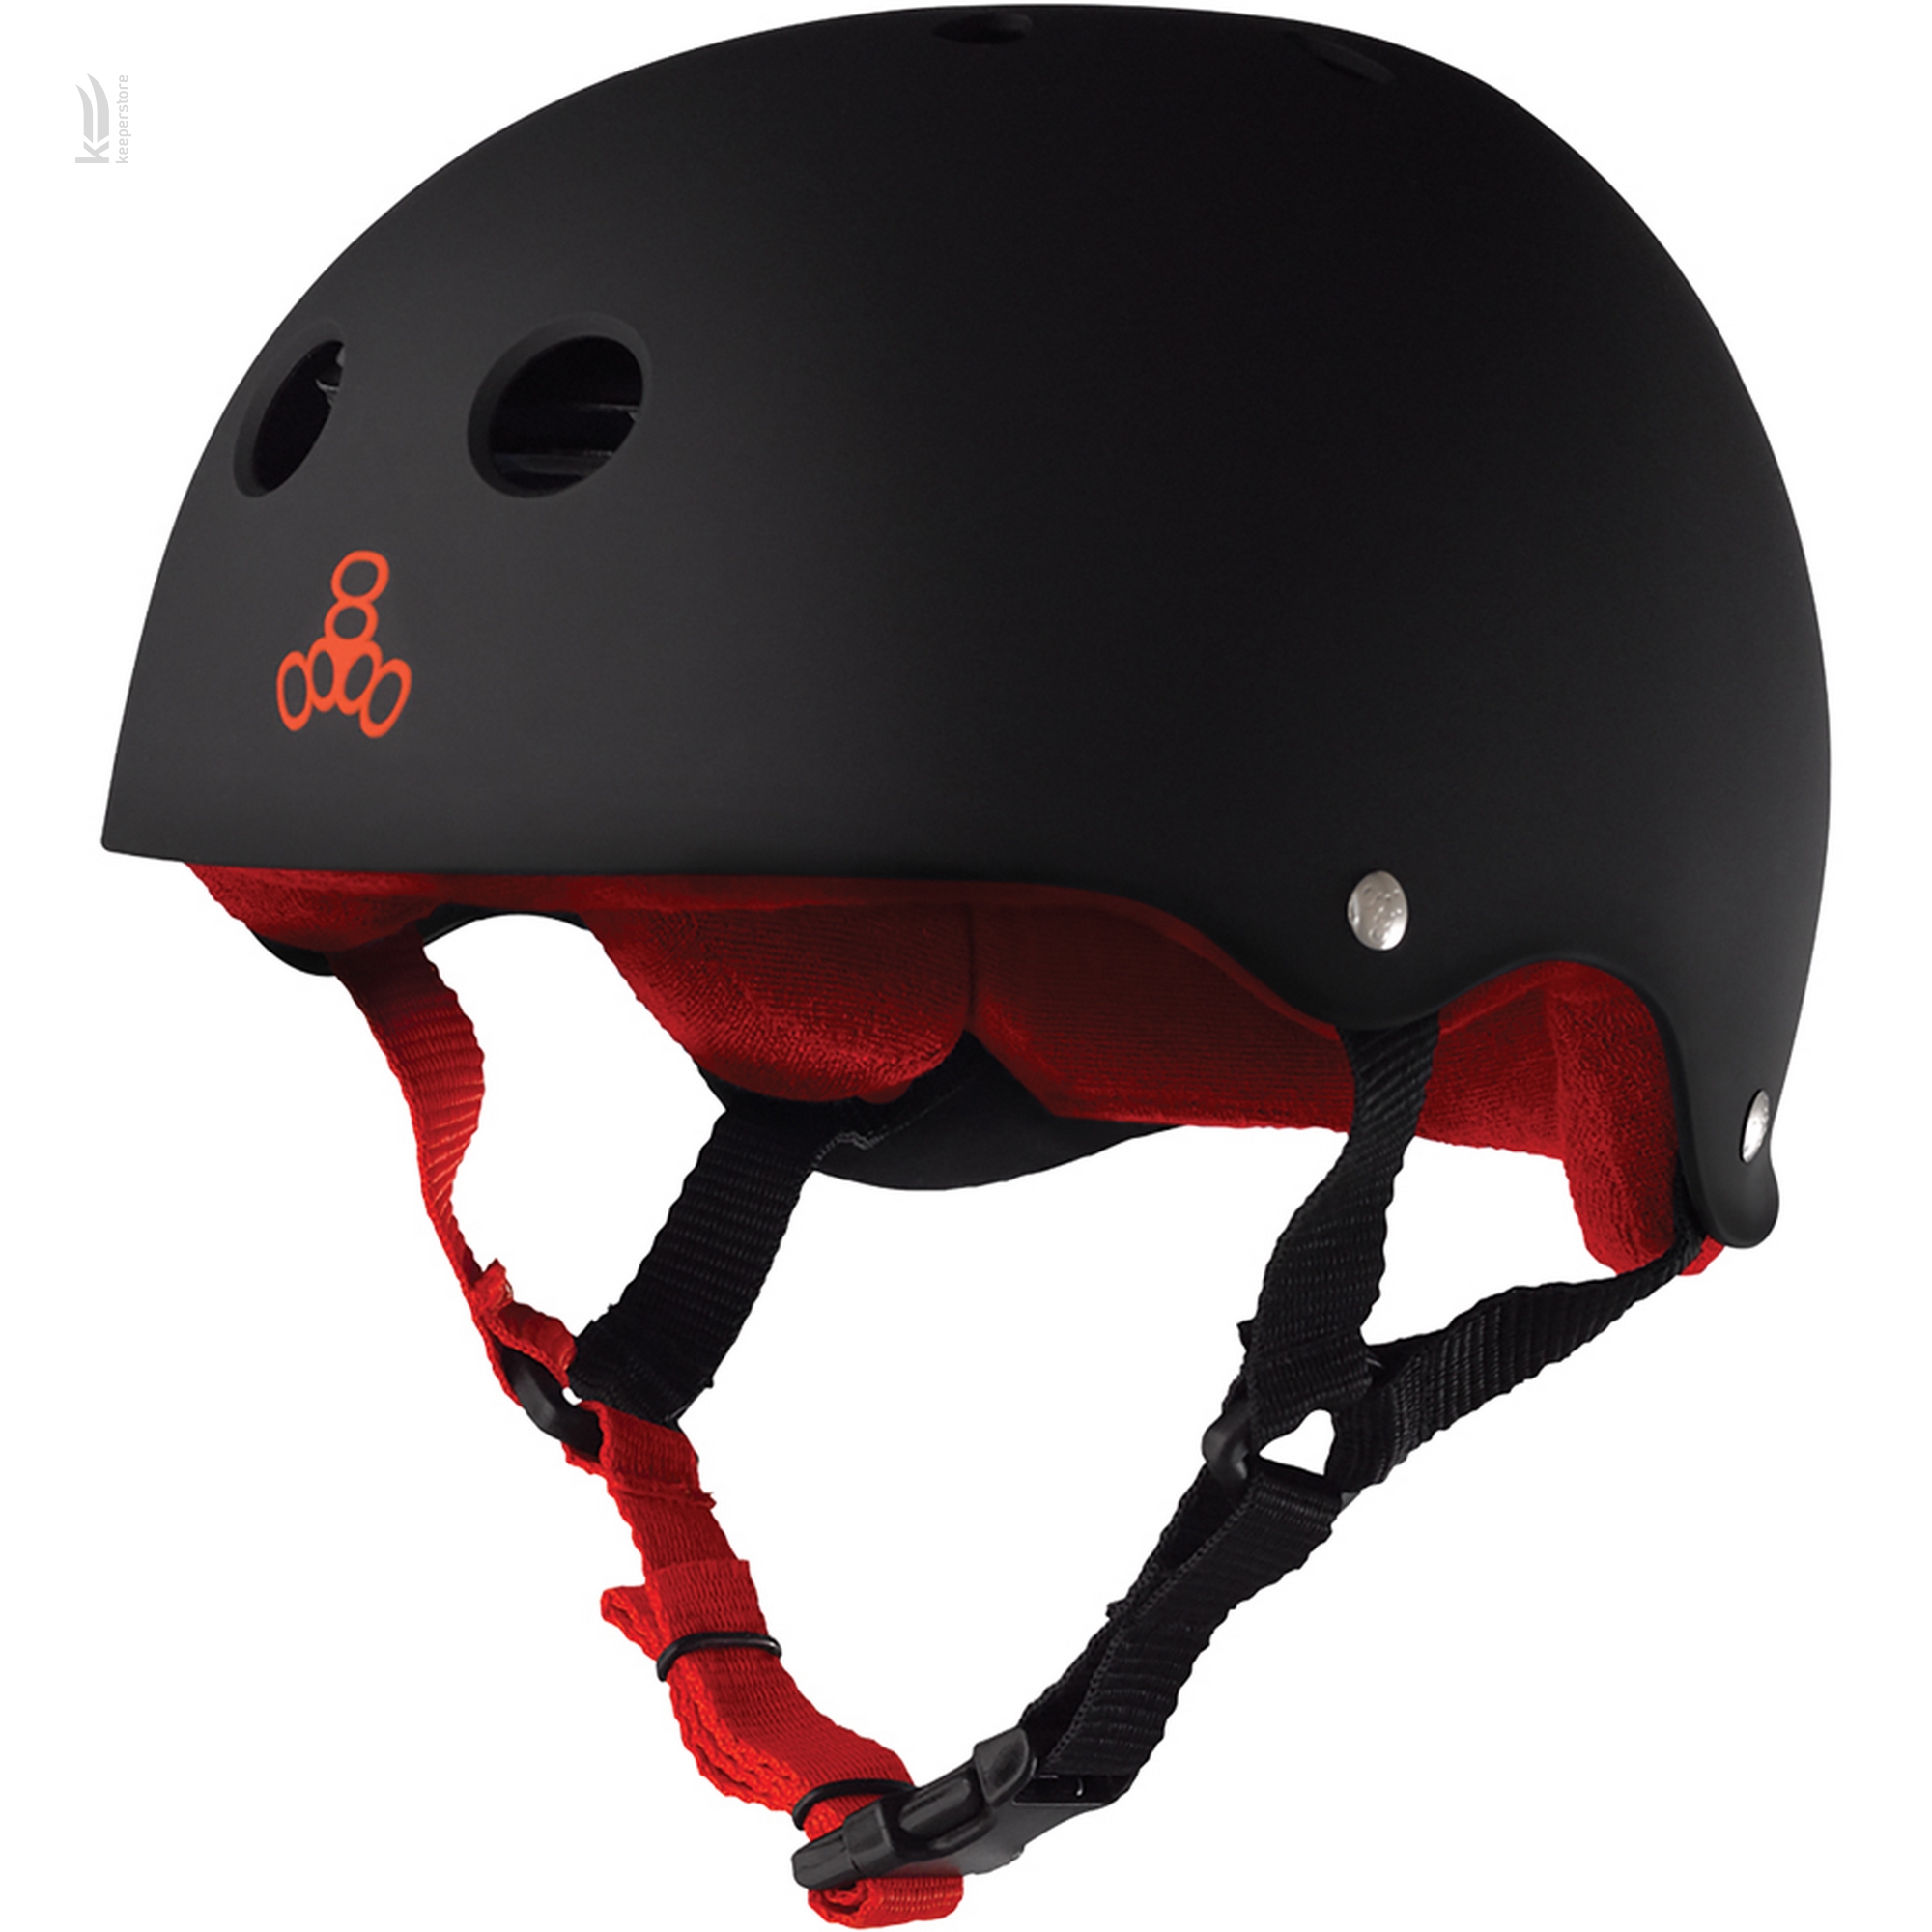 Защитный шлем казанок Triple8 Sweatsaver Helmet Black w/ Red (L)